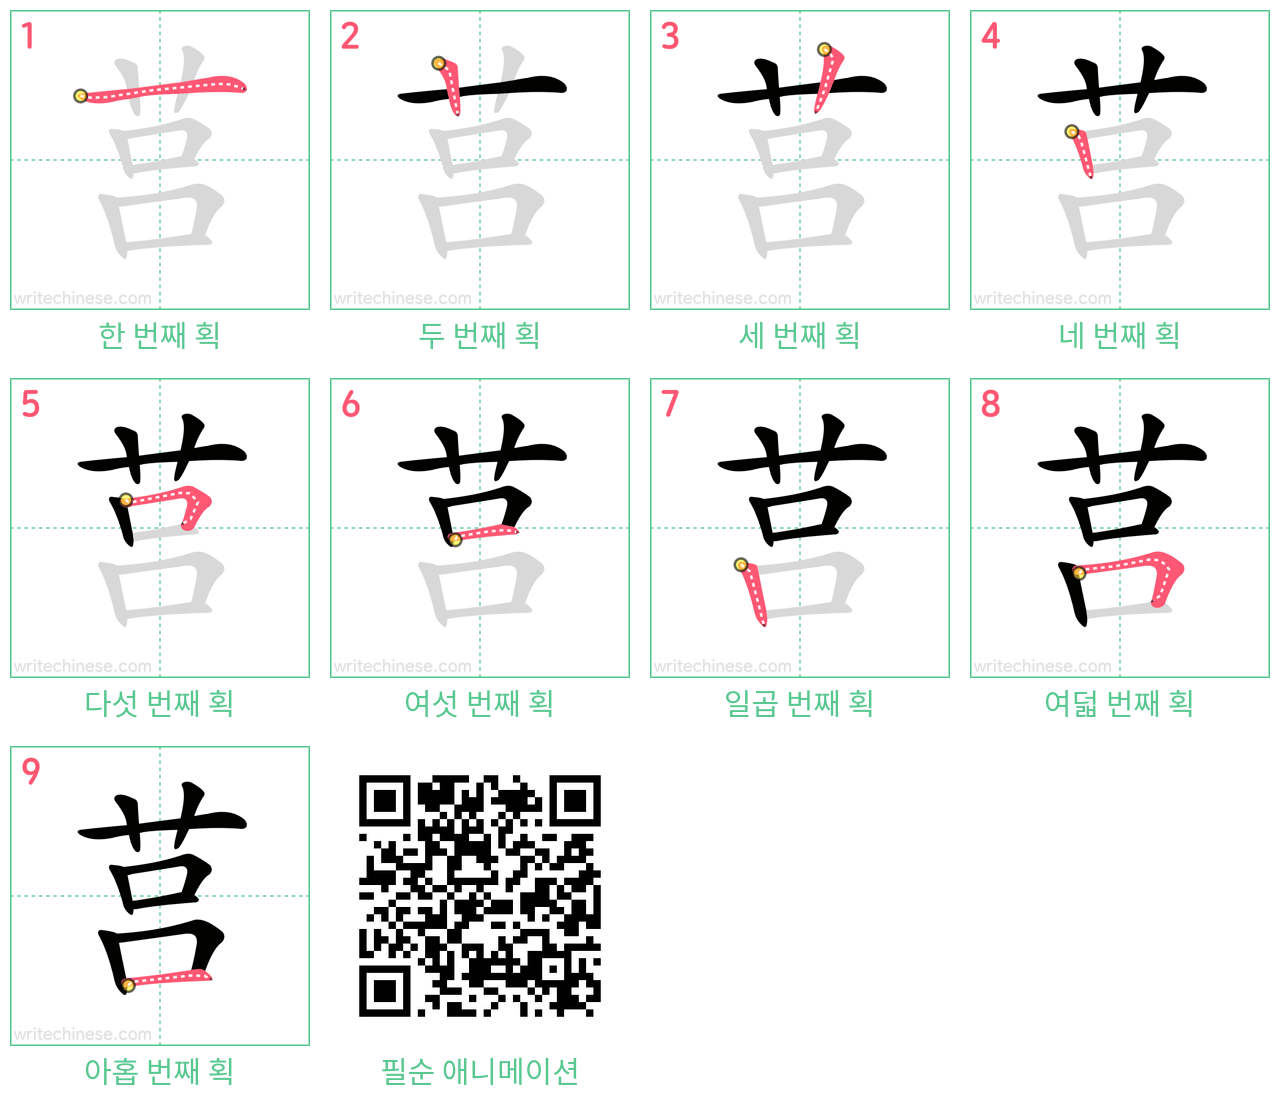 莒 step-by-step stroke order diagrams